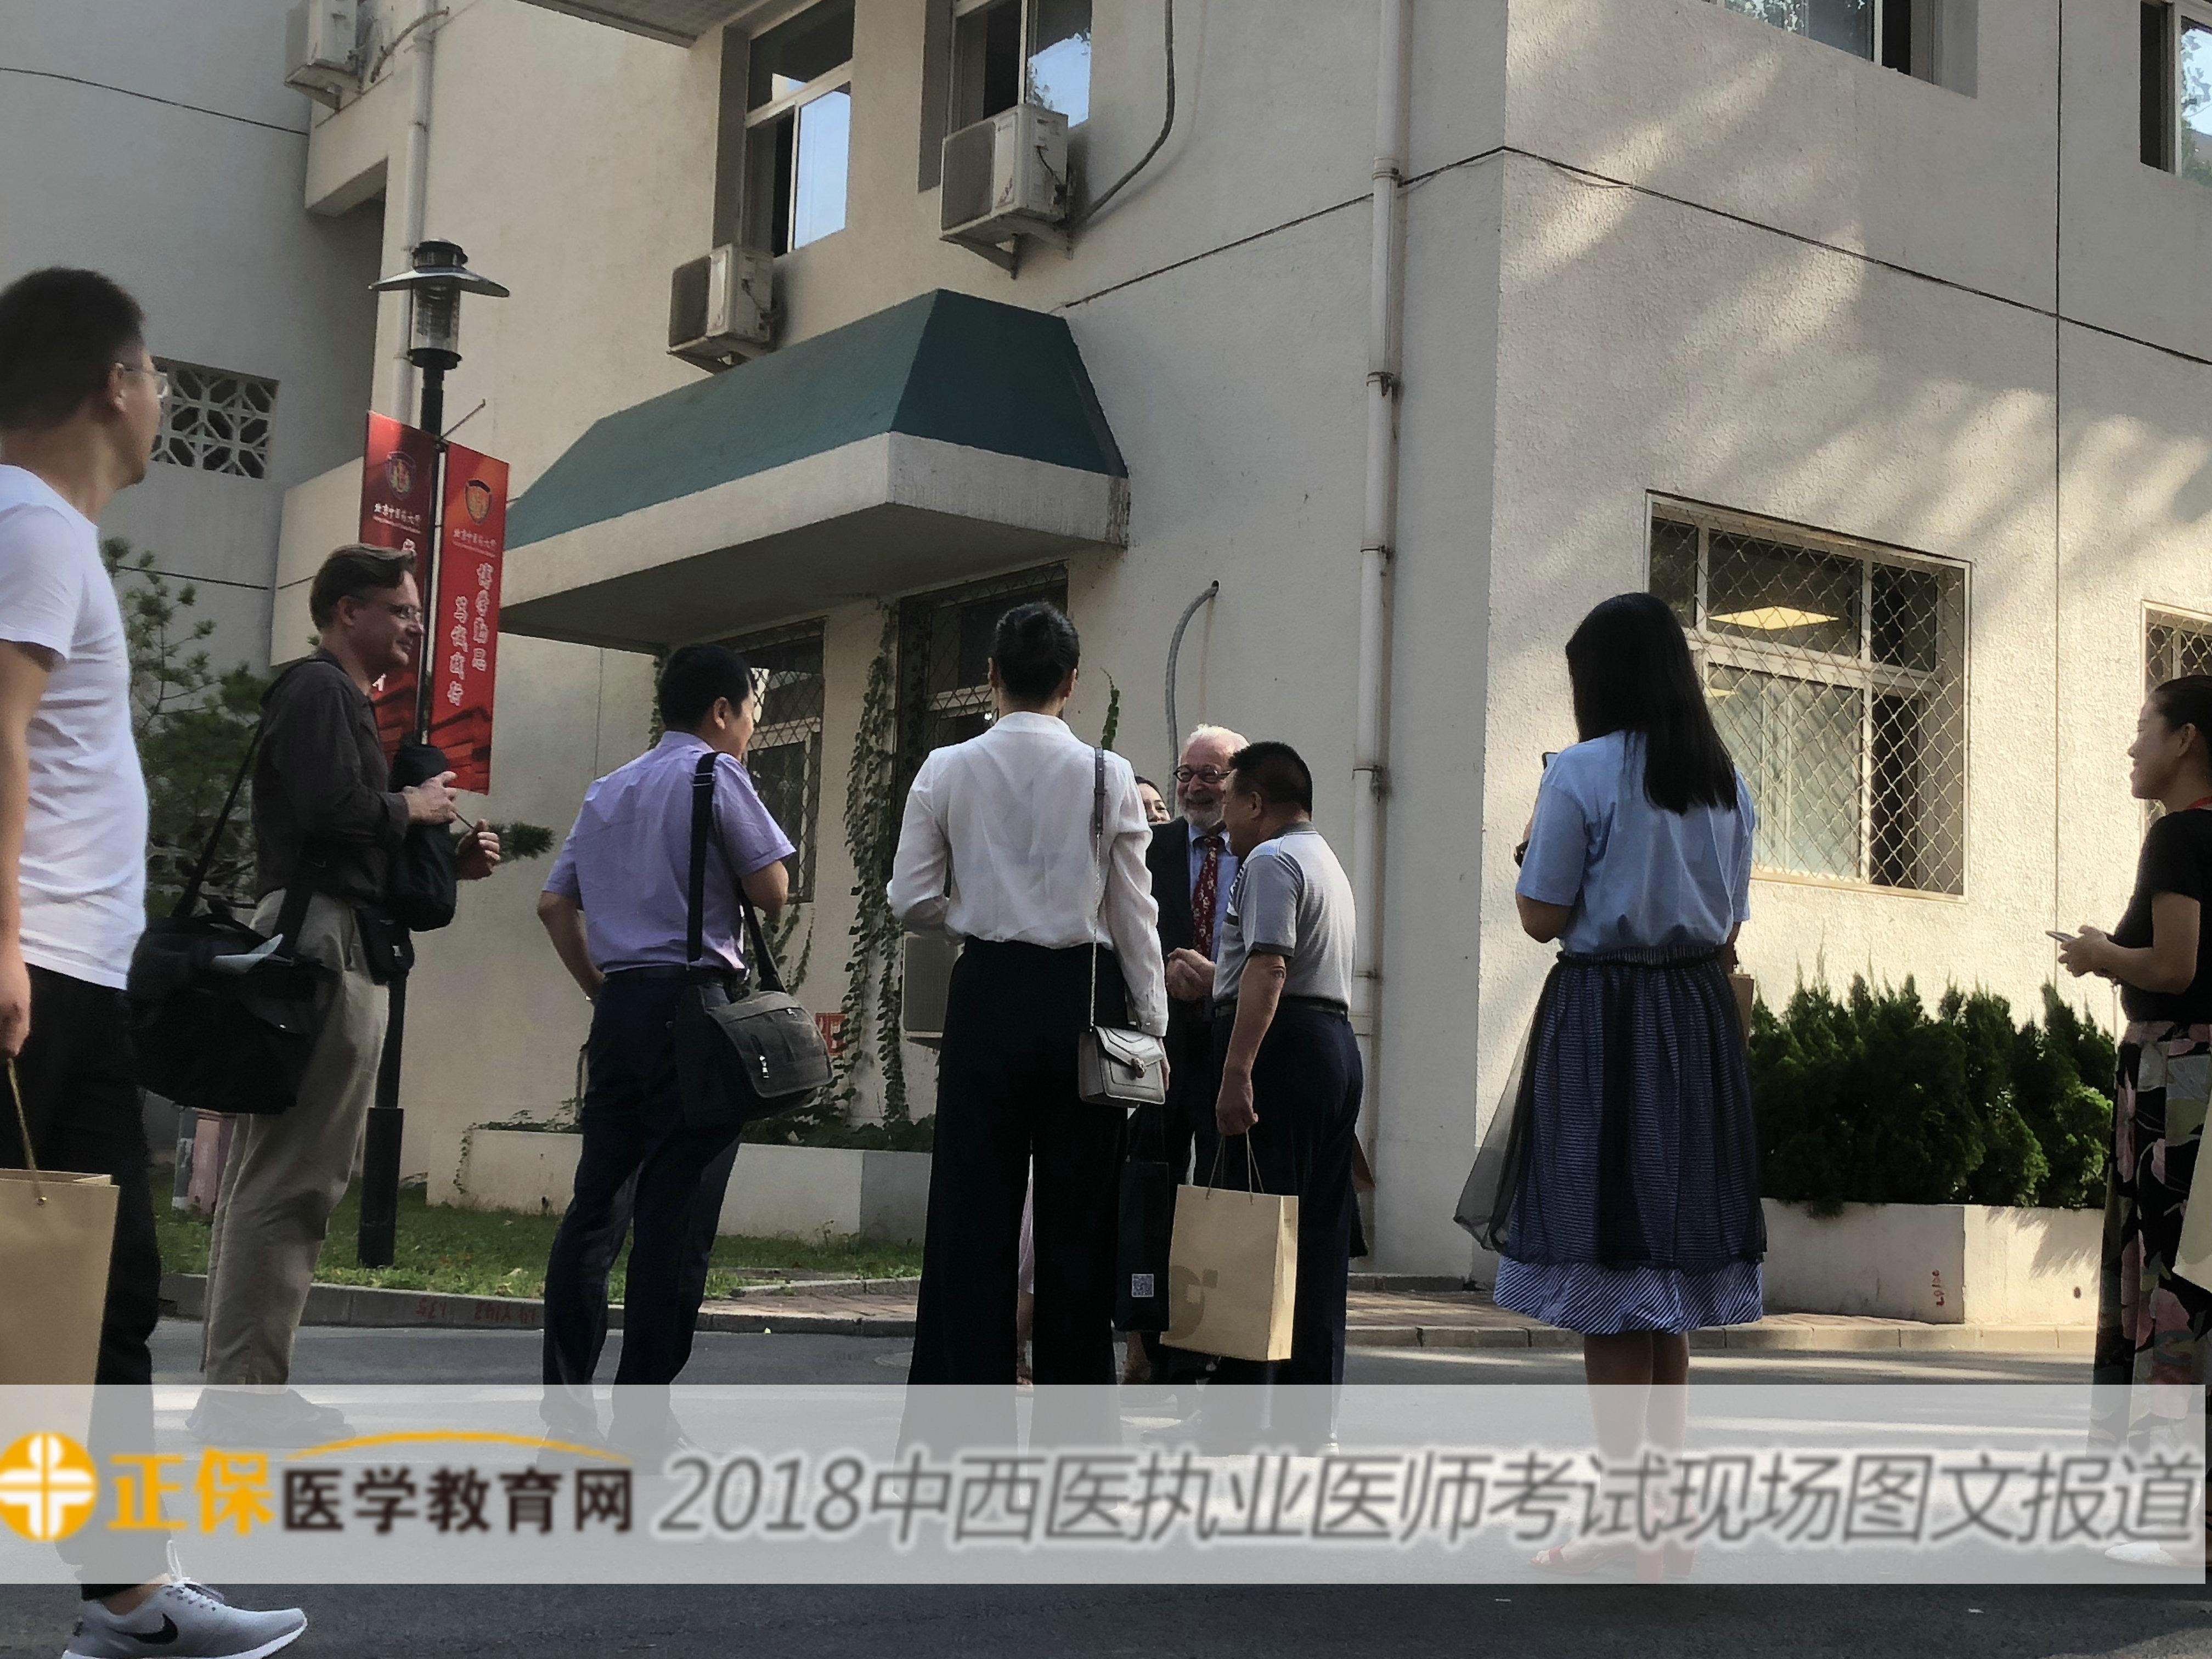 【图文报道】2018年中西医执业医师考试8月25日正式开考